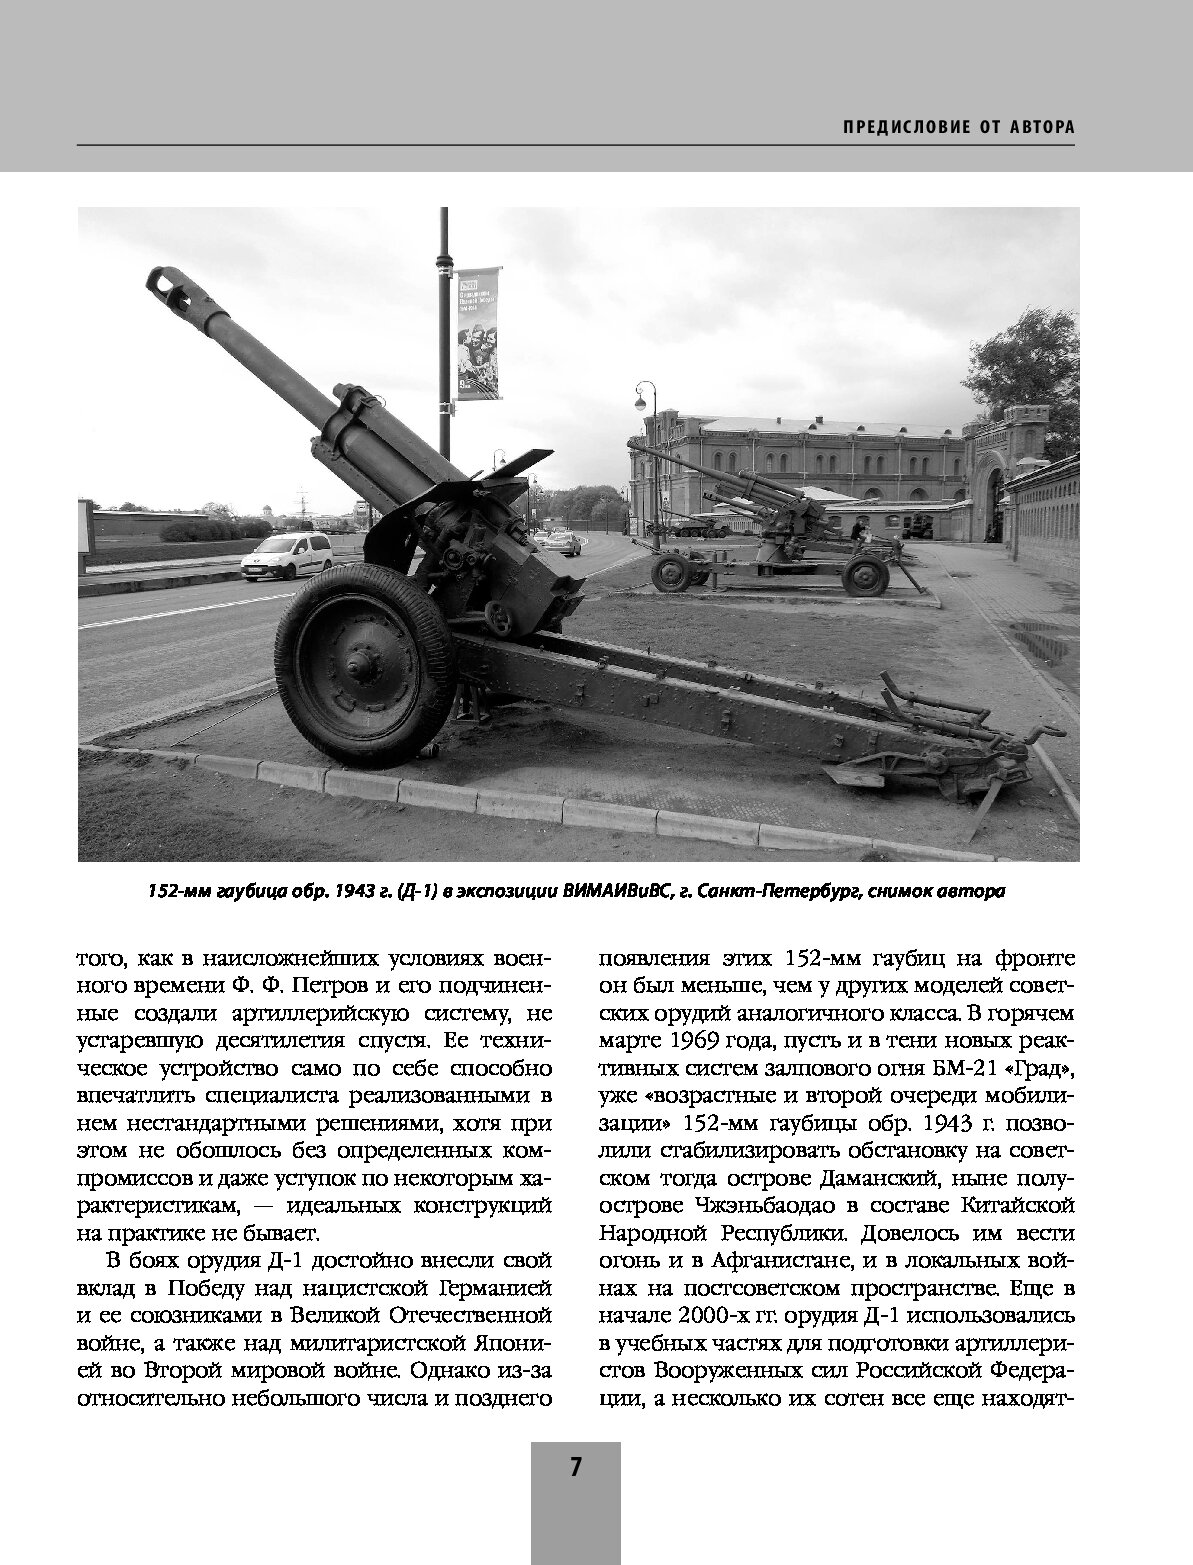 Советская гаубица Д-1: Крупнокалиберная "звезда" артиллерии Красной Армии